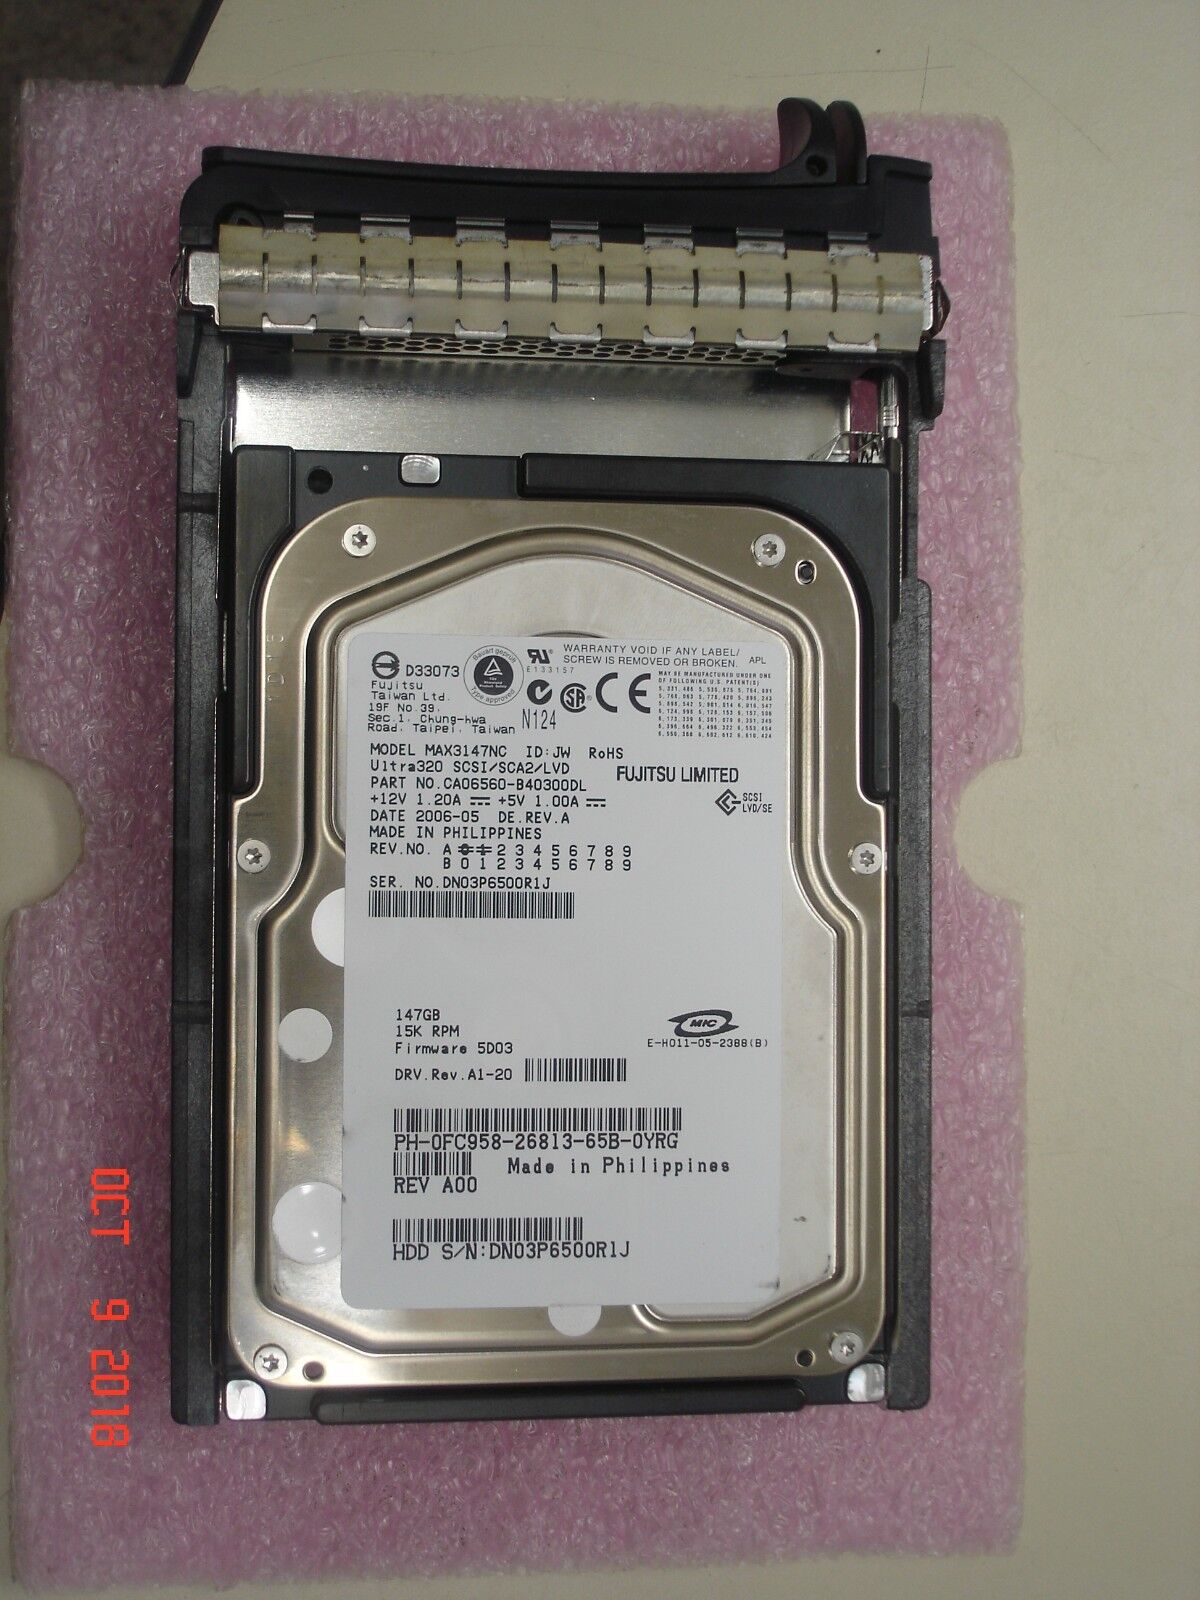 FC958 DELL 146GB 15K U320 3.5